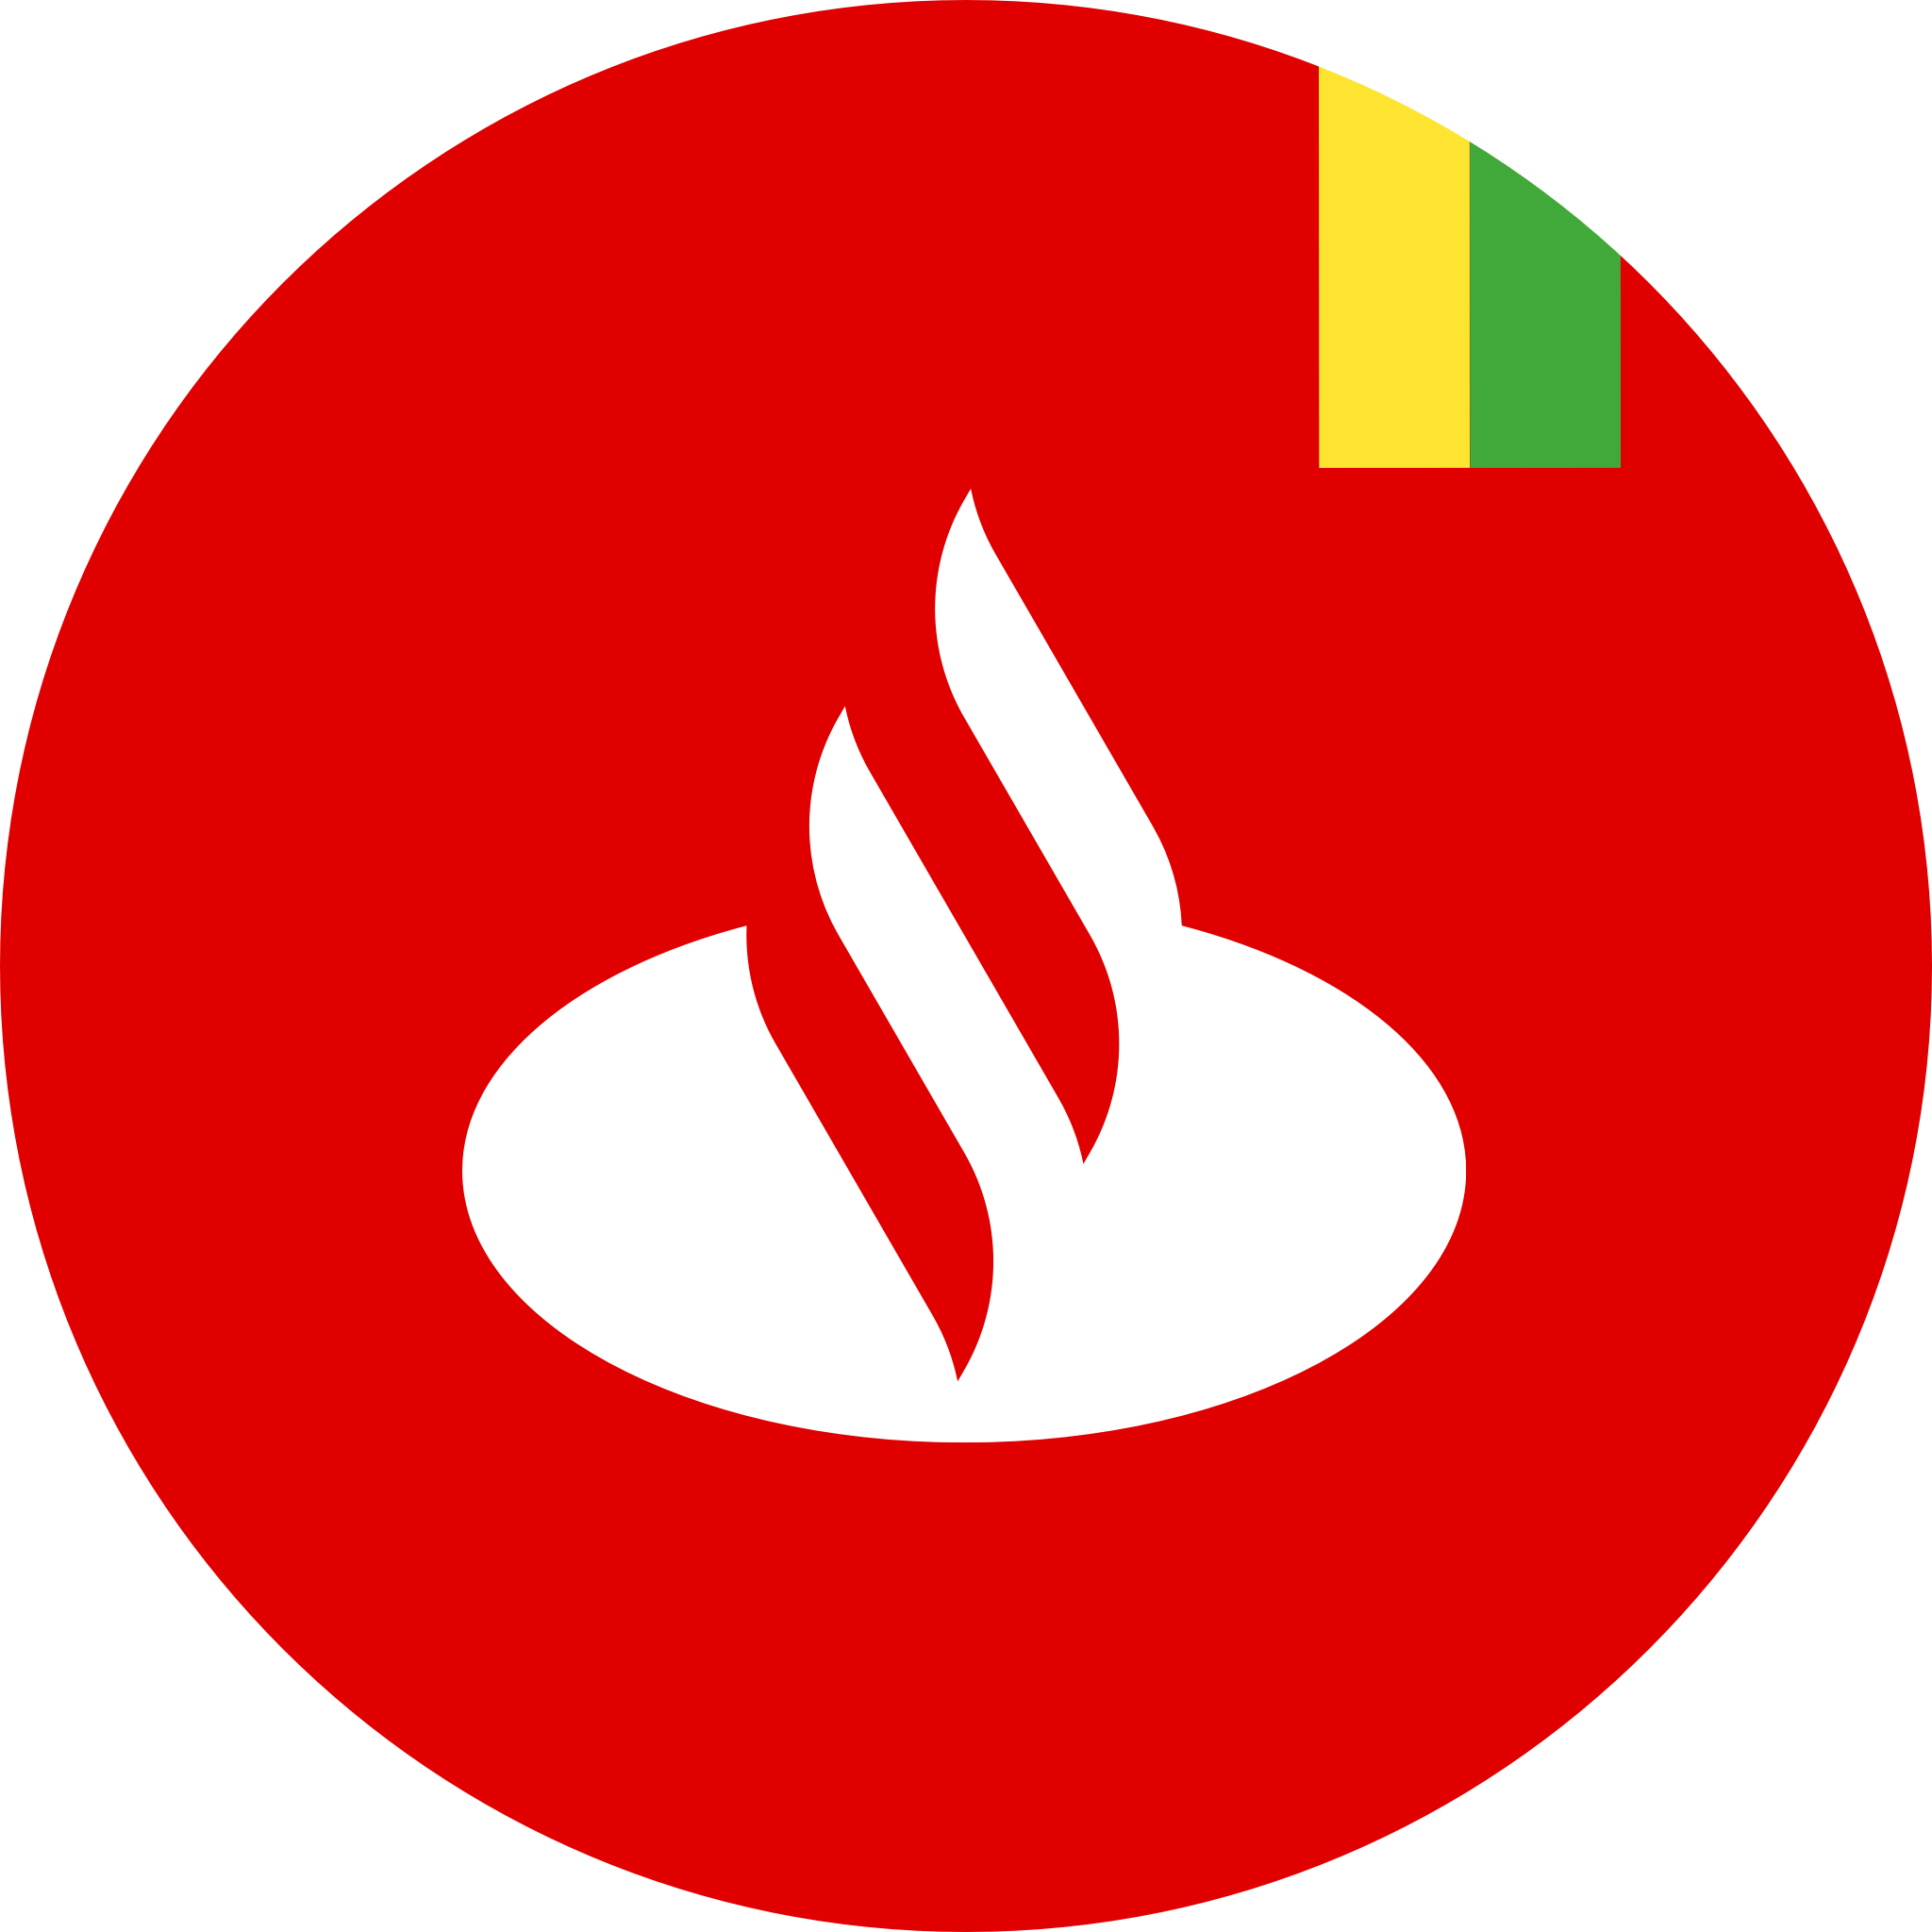 Santander icon